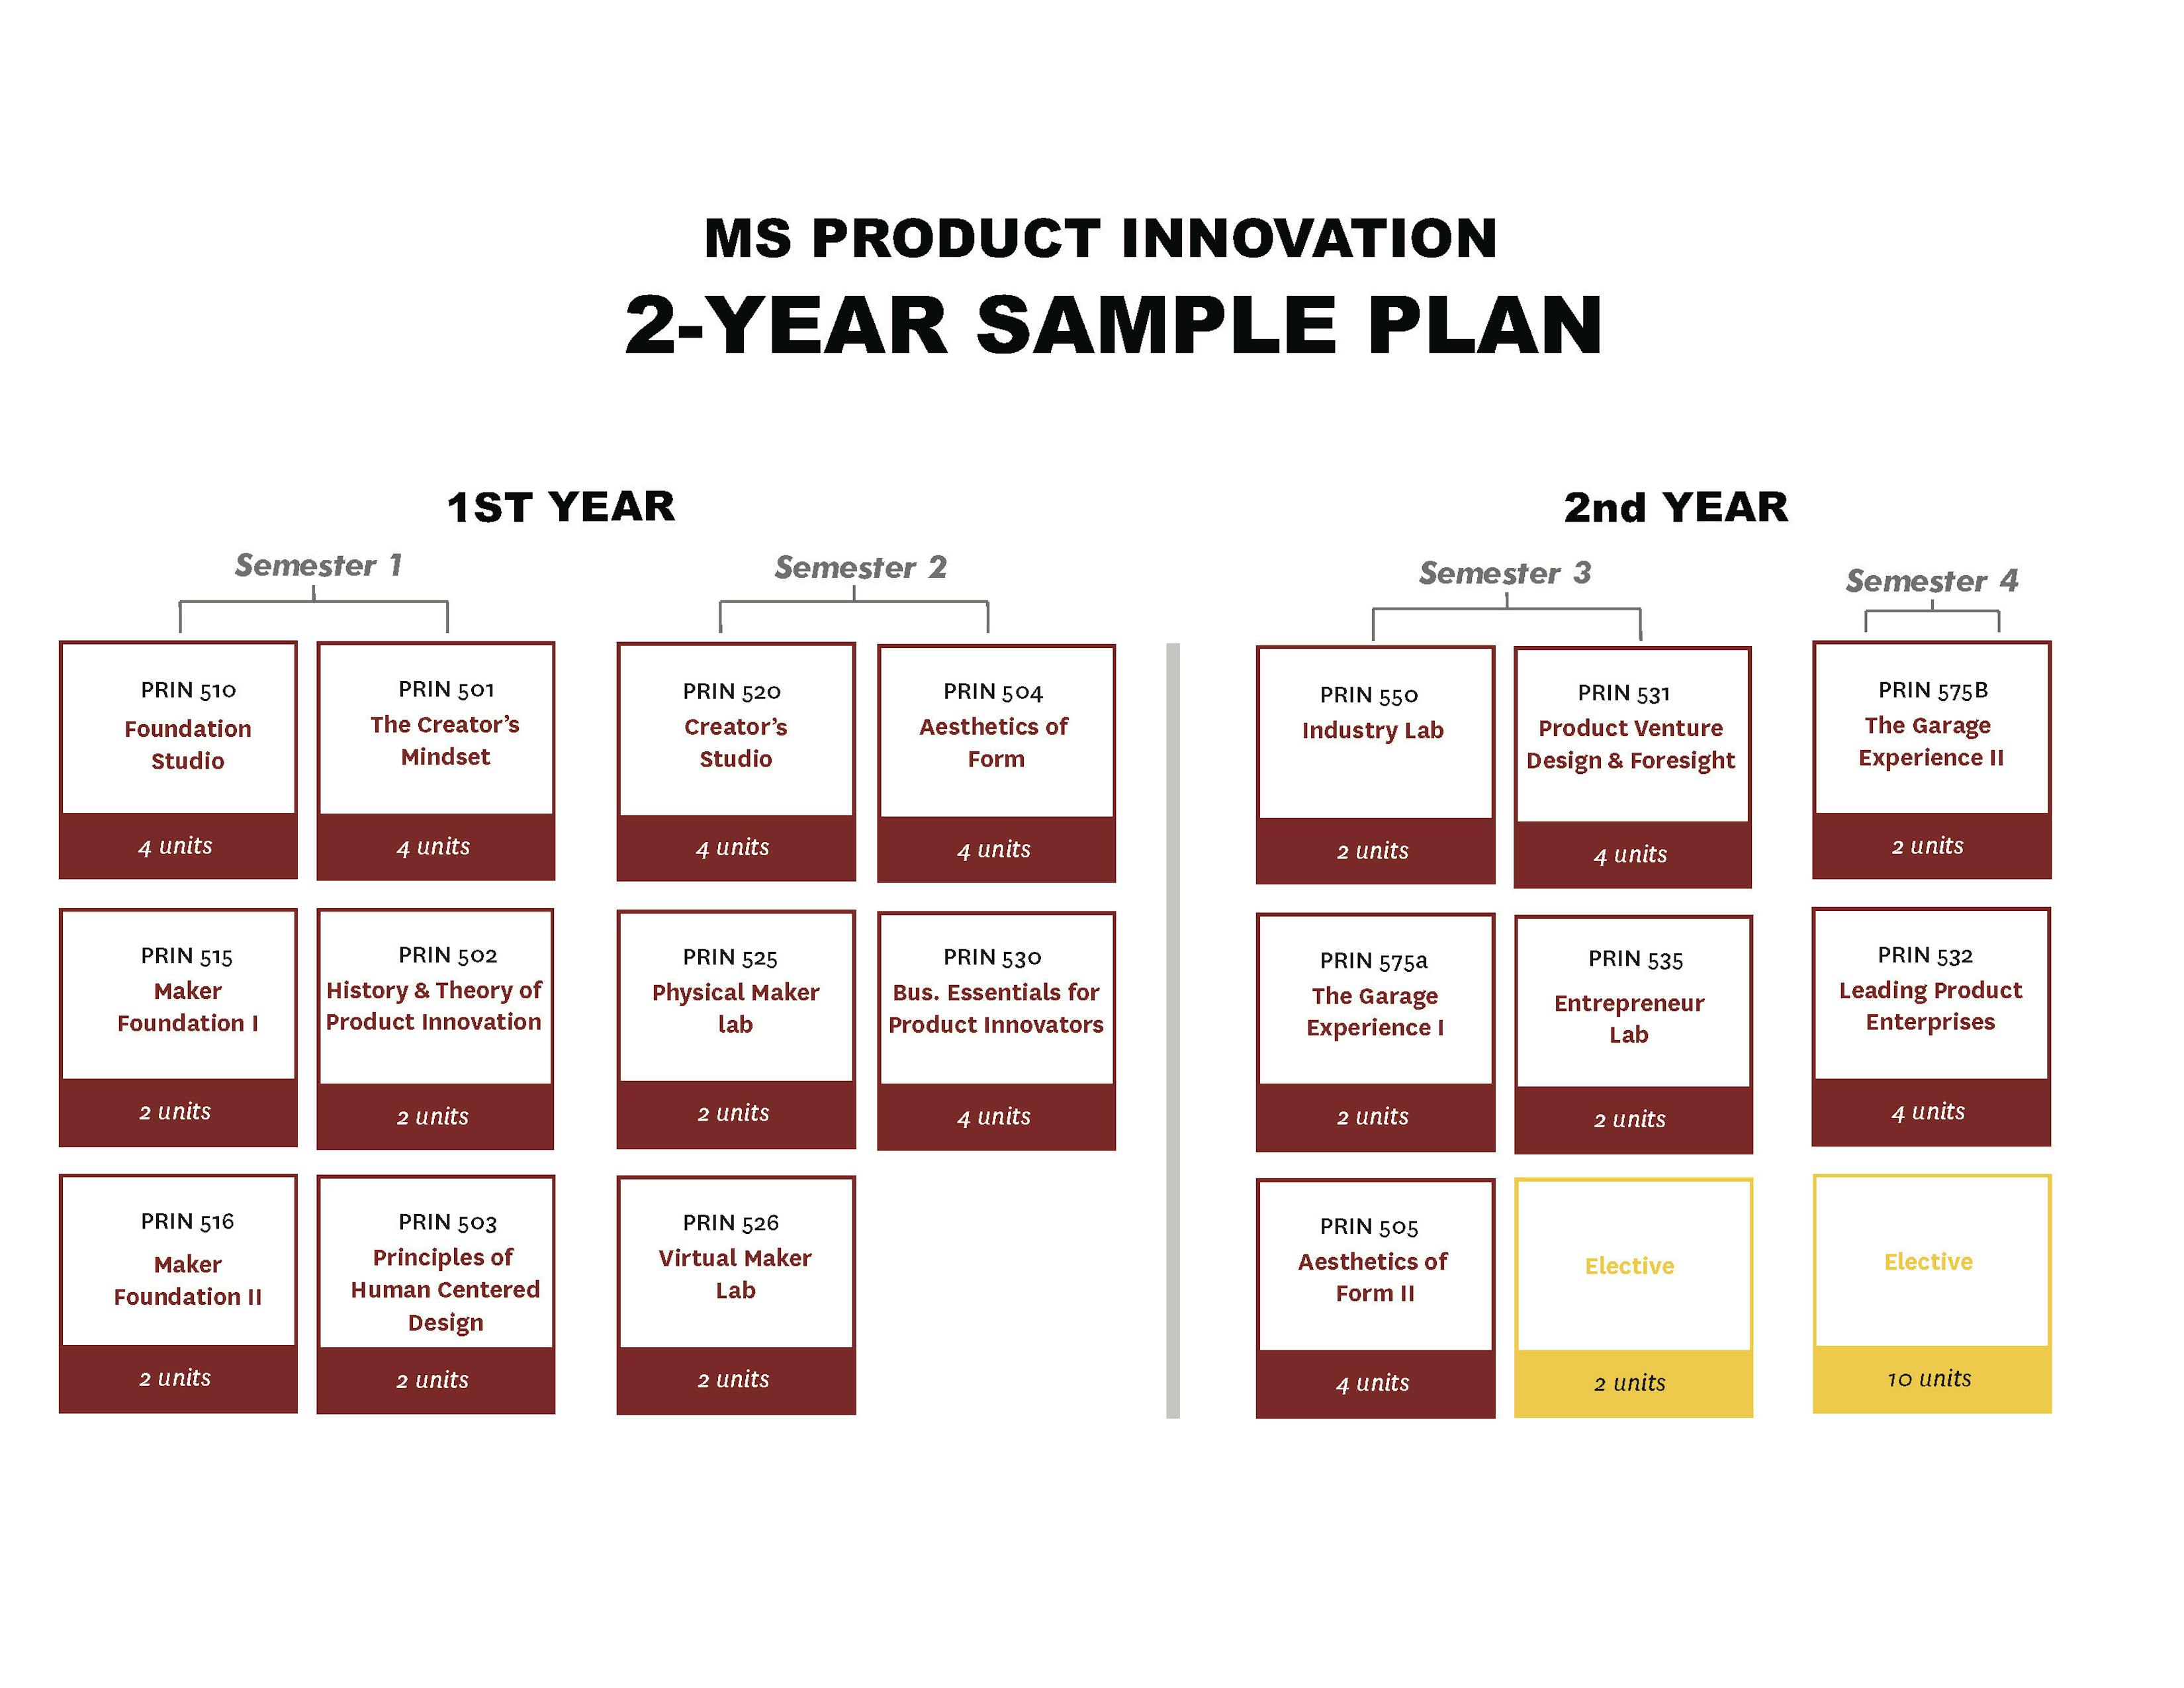 MSPRIN 2 year sample plan